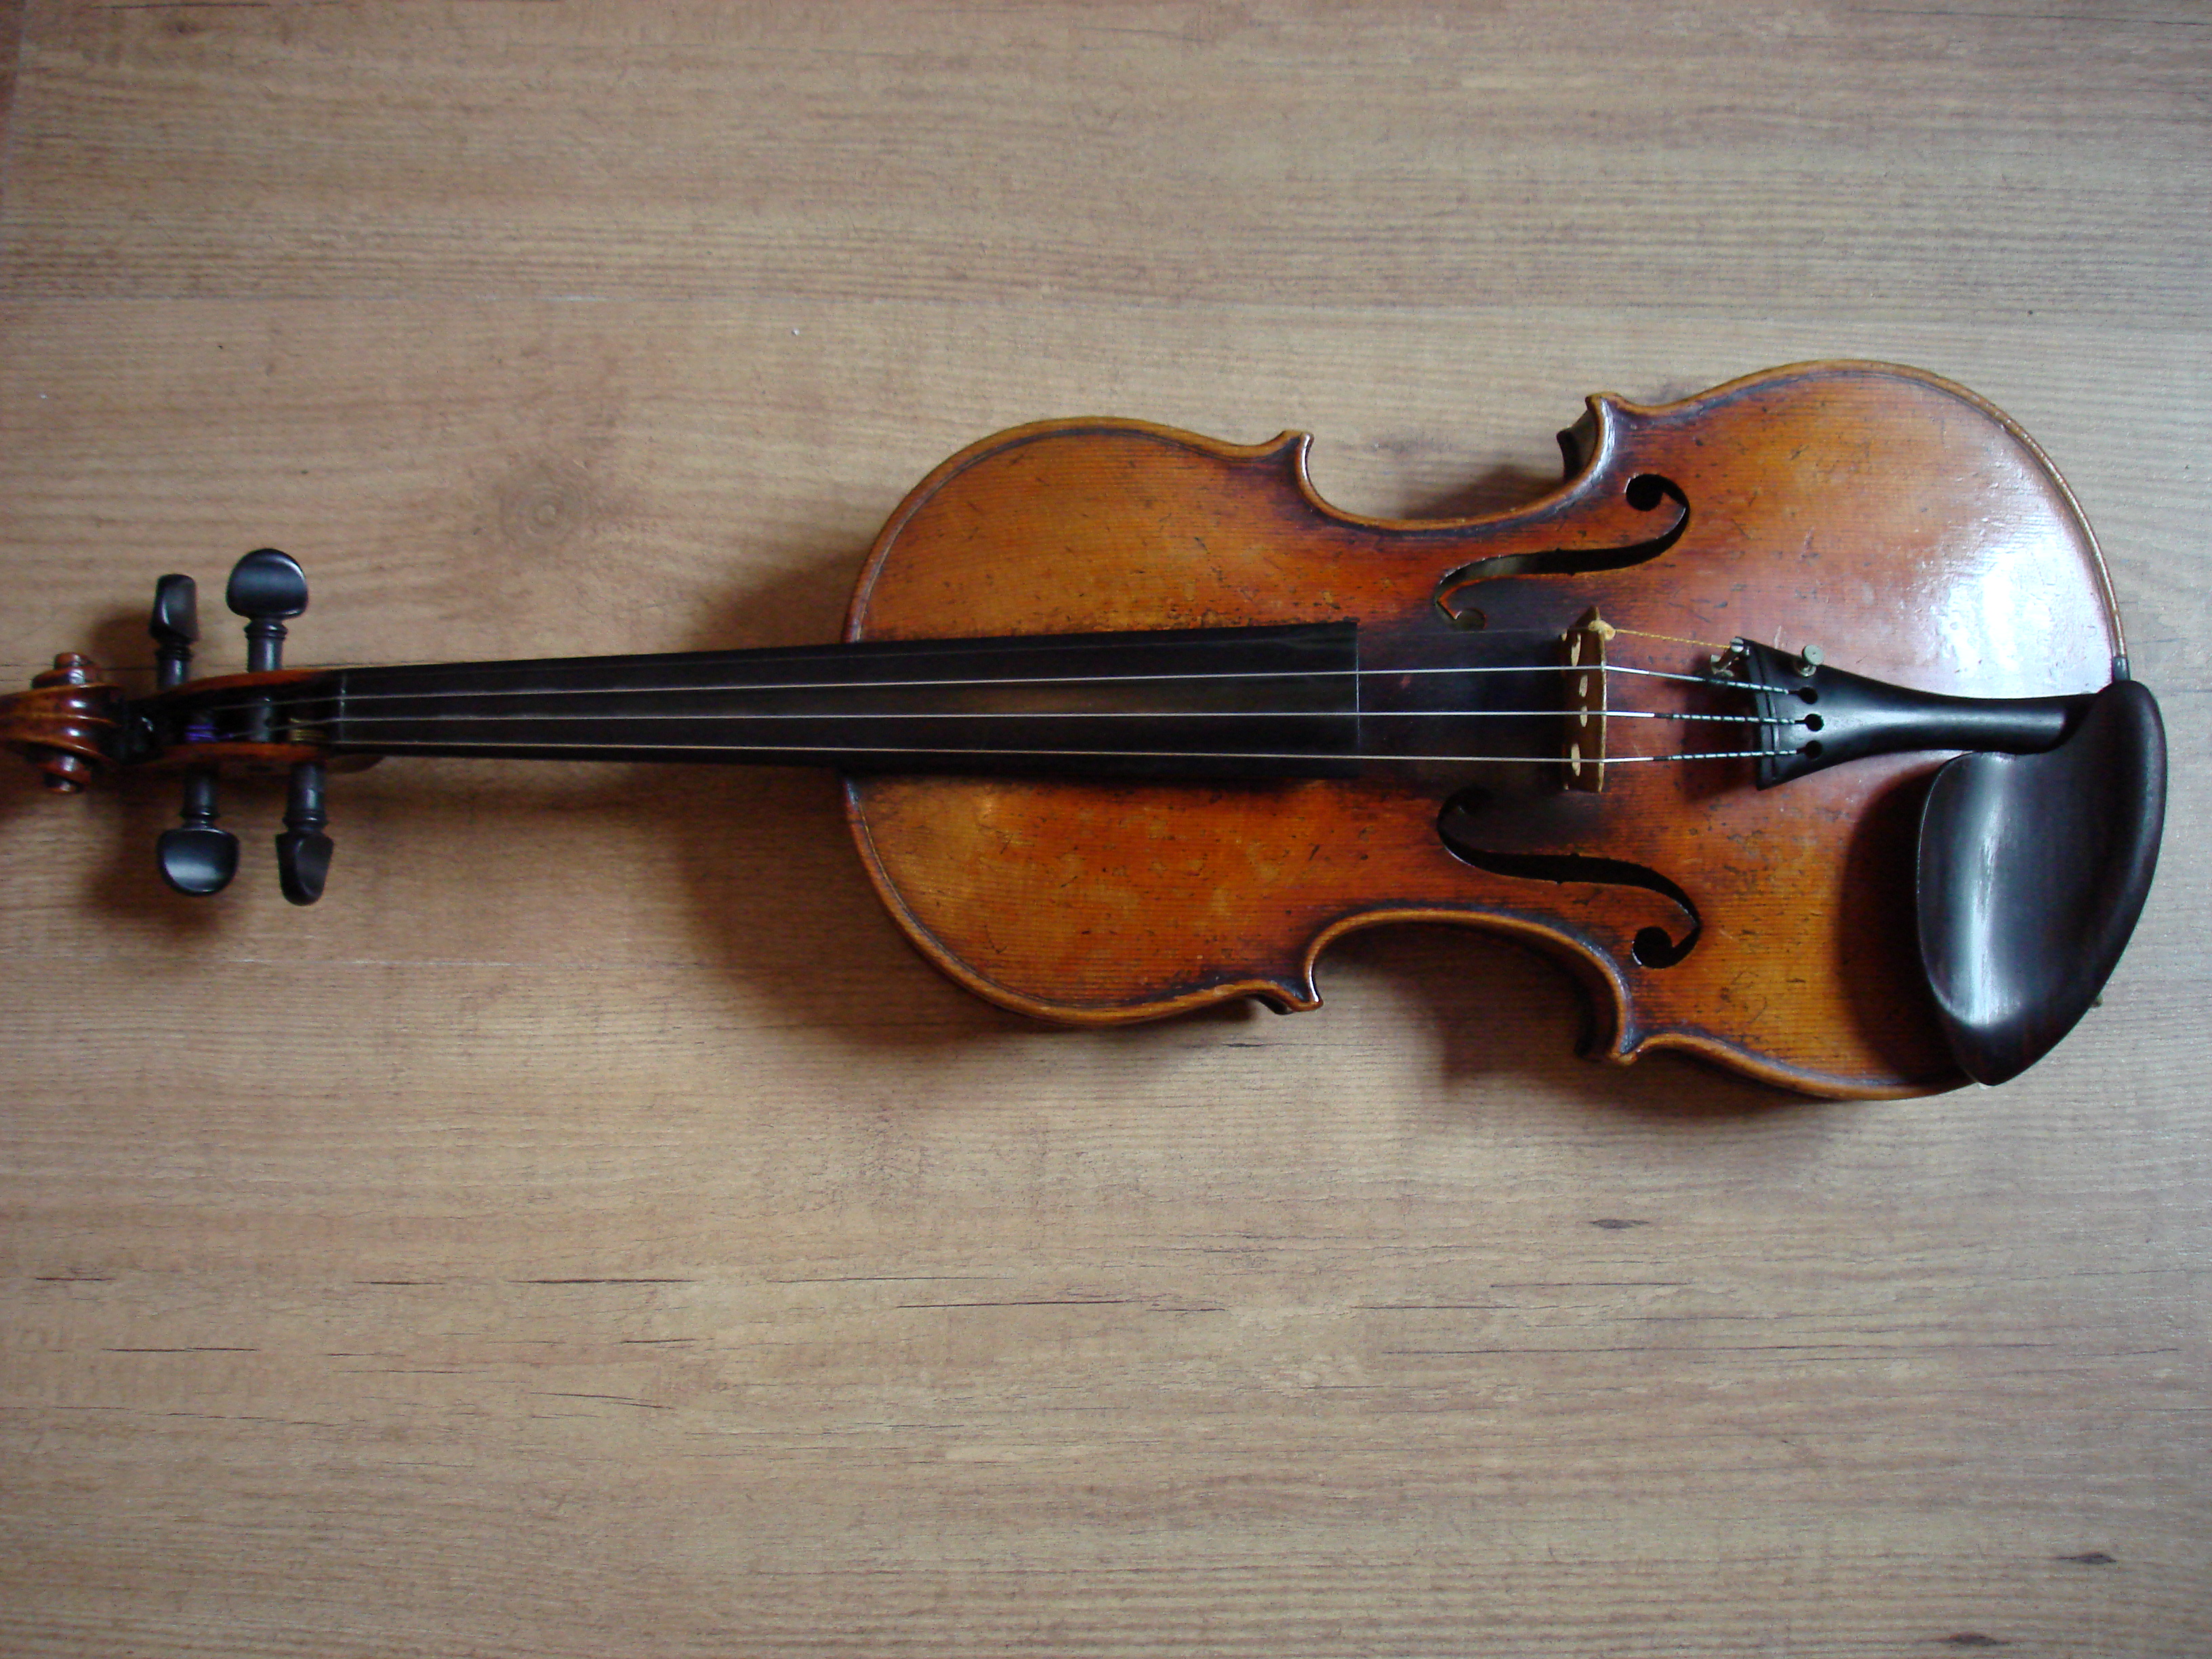 Duitse viool €2.000,-
Taxatierapport aanwezig